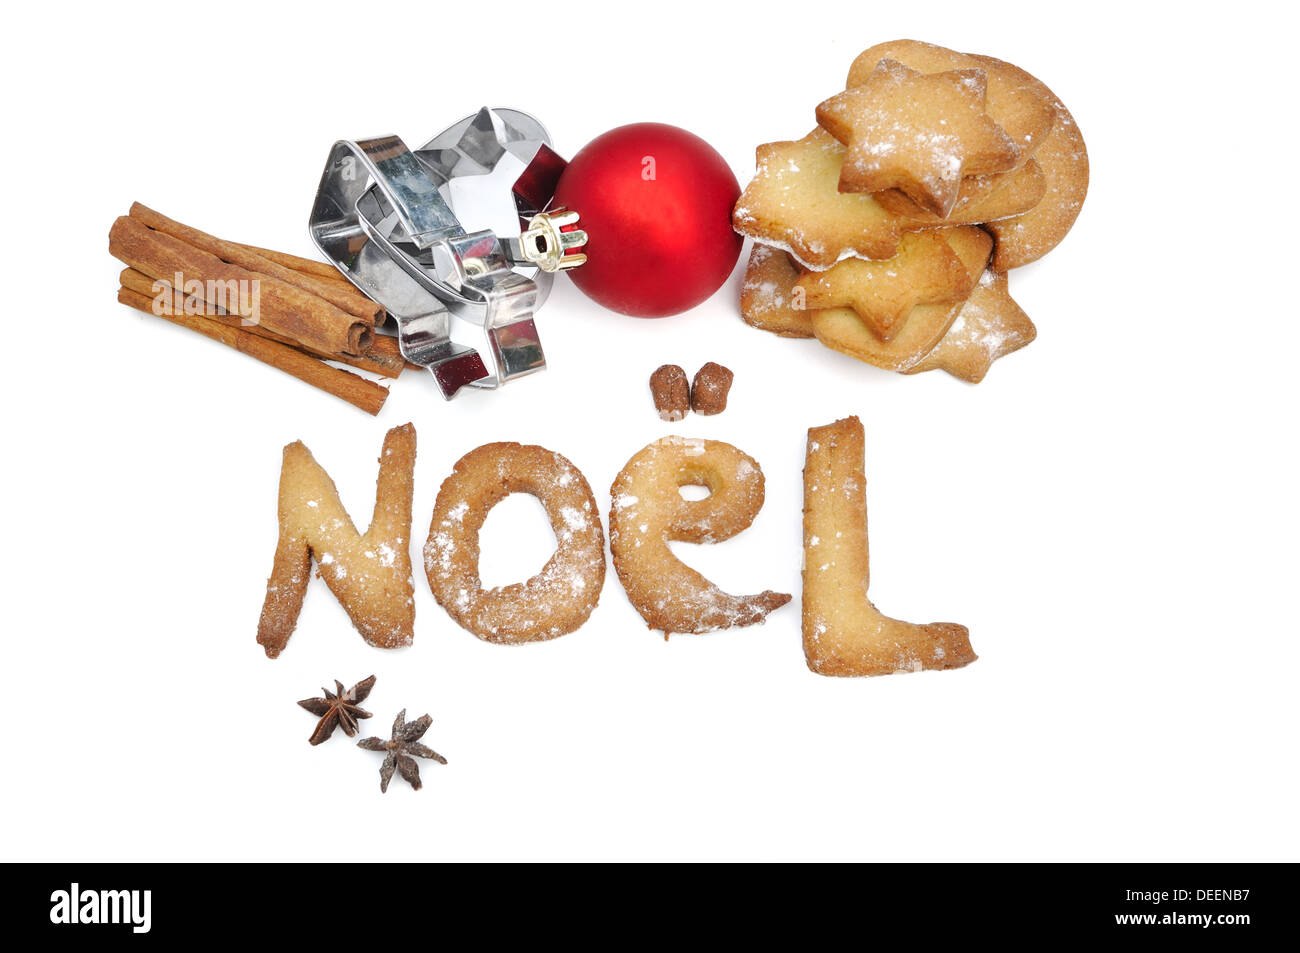 Cookies faits maison "Noël" (Noël en français) avec les cookies et les épices sur fond blanc Banque D'Images